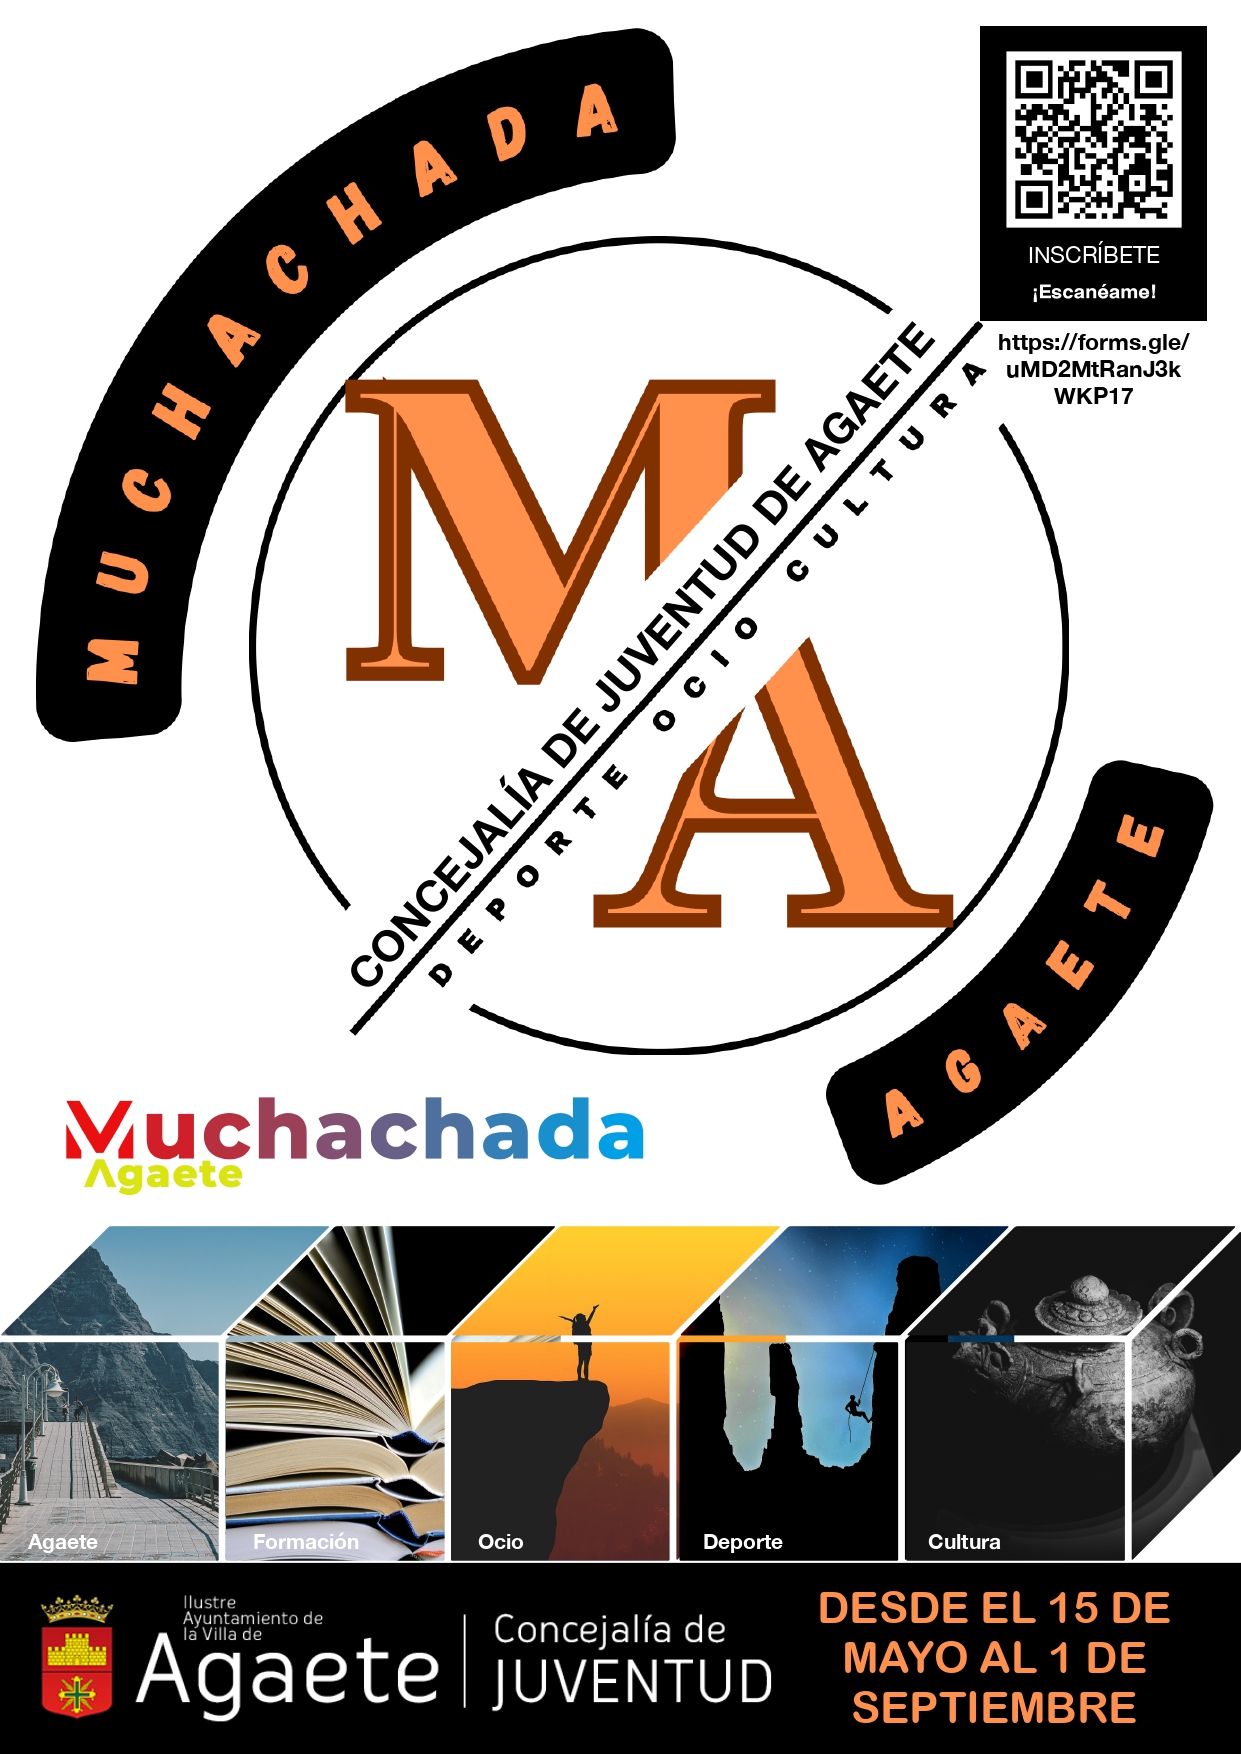 El Ayuntamiento de Agaete amplía el plazo de inscripción para participar en el concurso ‘Muchachada Agaete’ 